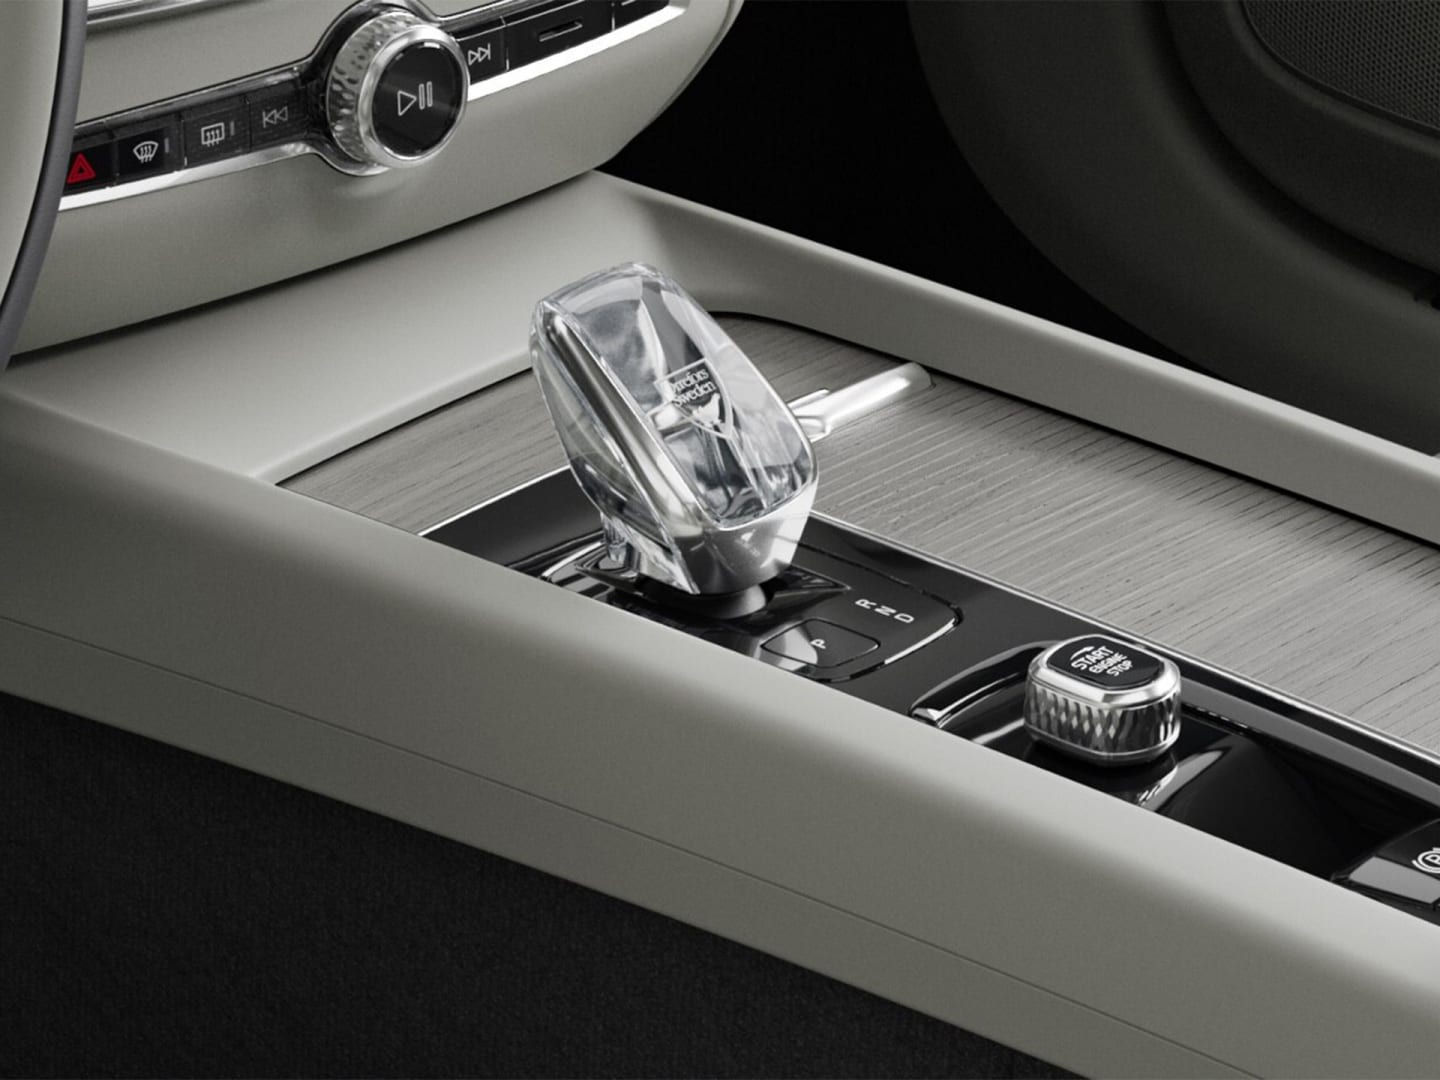 Botón de arranque y palanca de cambios de cristal en la consola central con acabados en madera del semihíbrido Volvo V60.